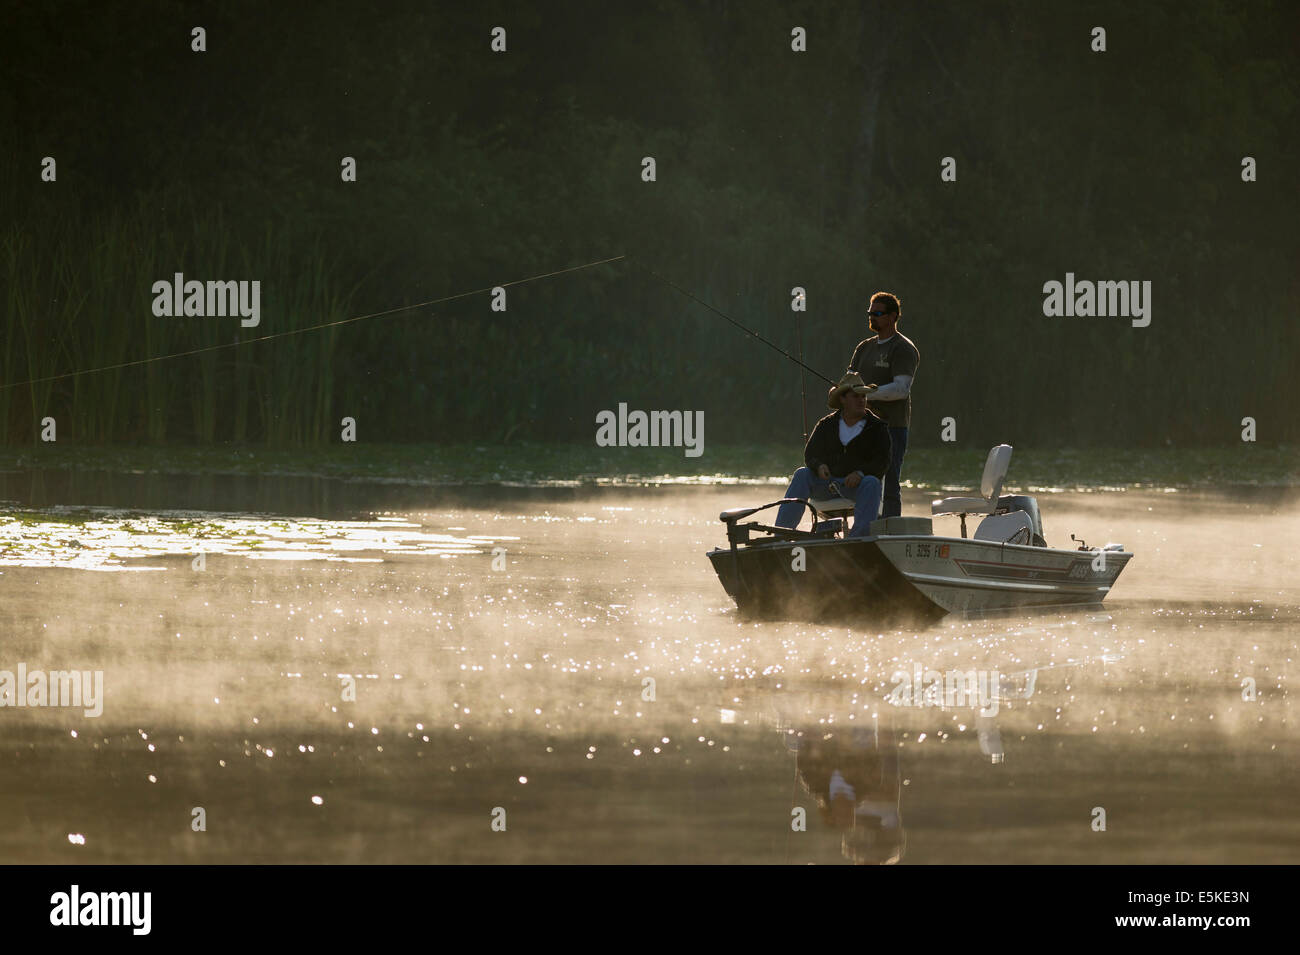 https://c8.alamy.com/comp/E5KE3N/early-morning-bass-fishing-on-haines-creek-river-in-leesburg-florida-E5KE3N.jpg